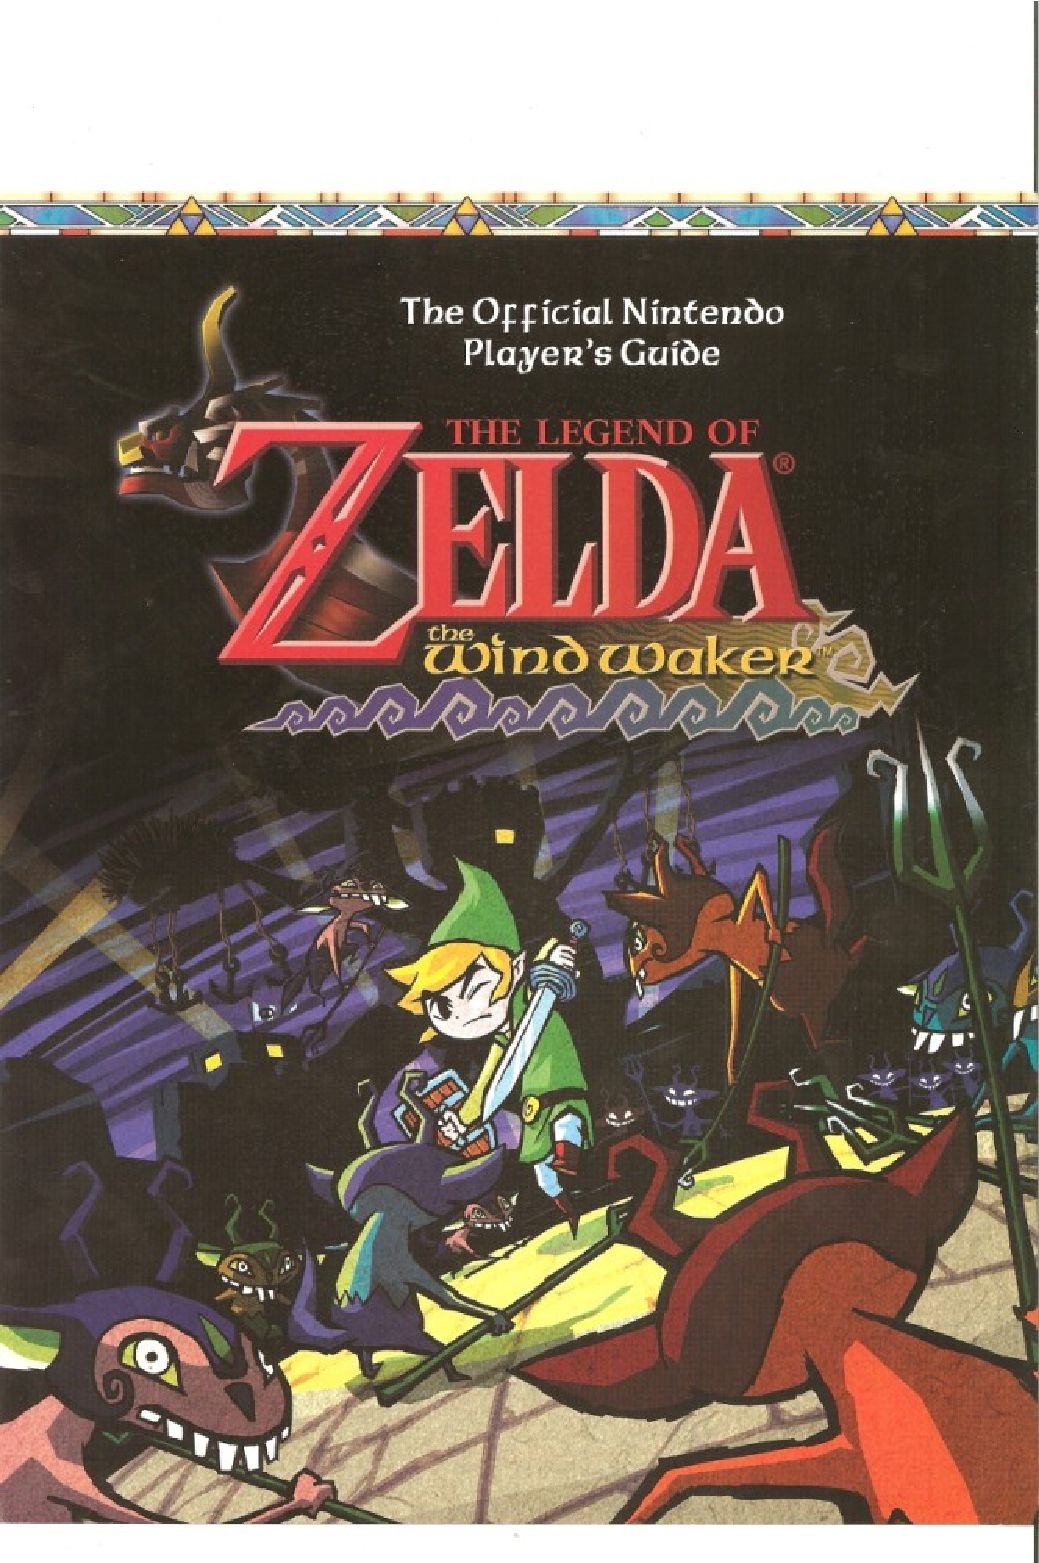 The Legend of Zelda - wind waker - Strategy Guide 2